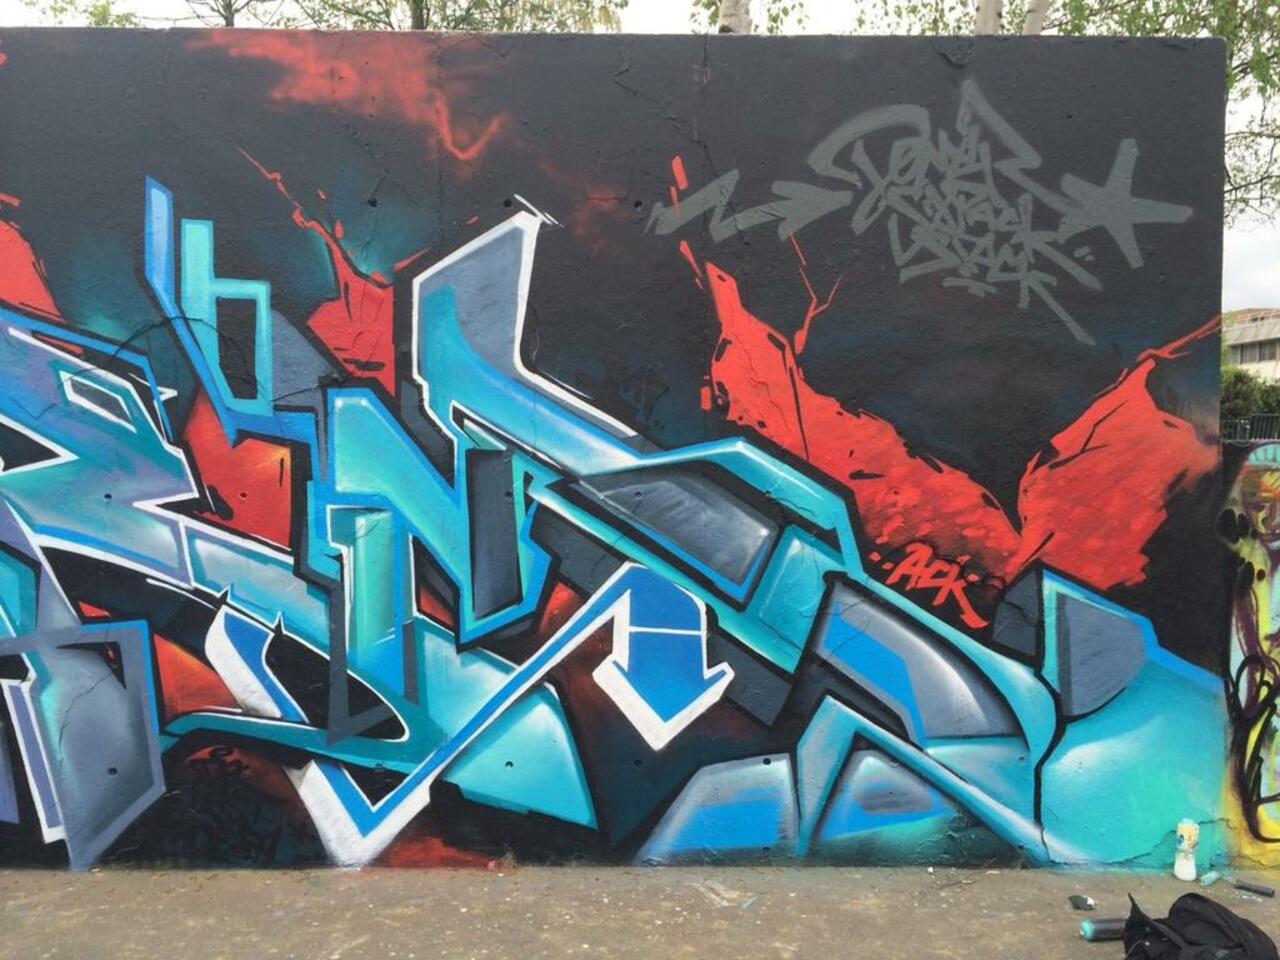 Brainstorm & Dope

#Graffiti #StreetArt #Mural #painting #Urban #Art http://t.co/FfTqsbQniM